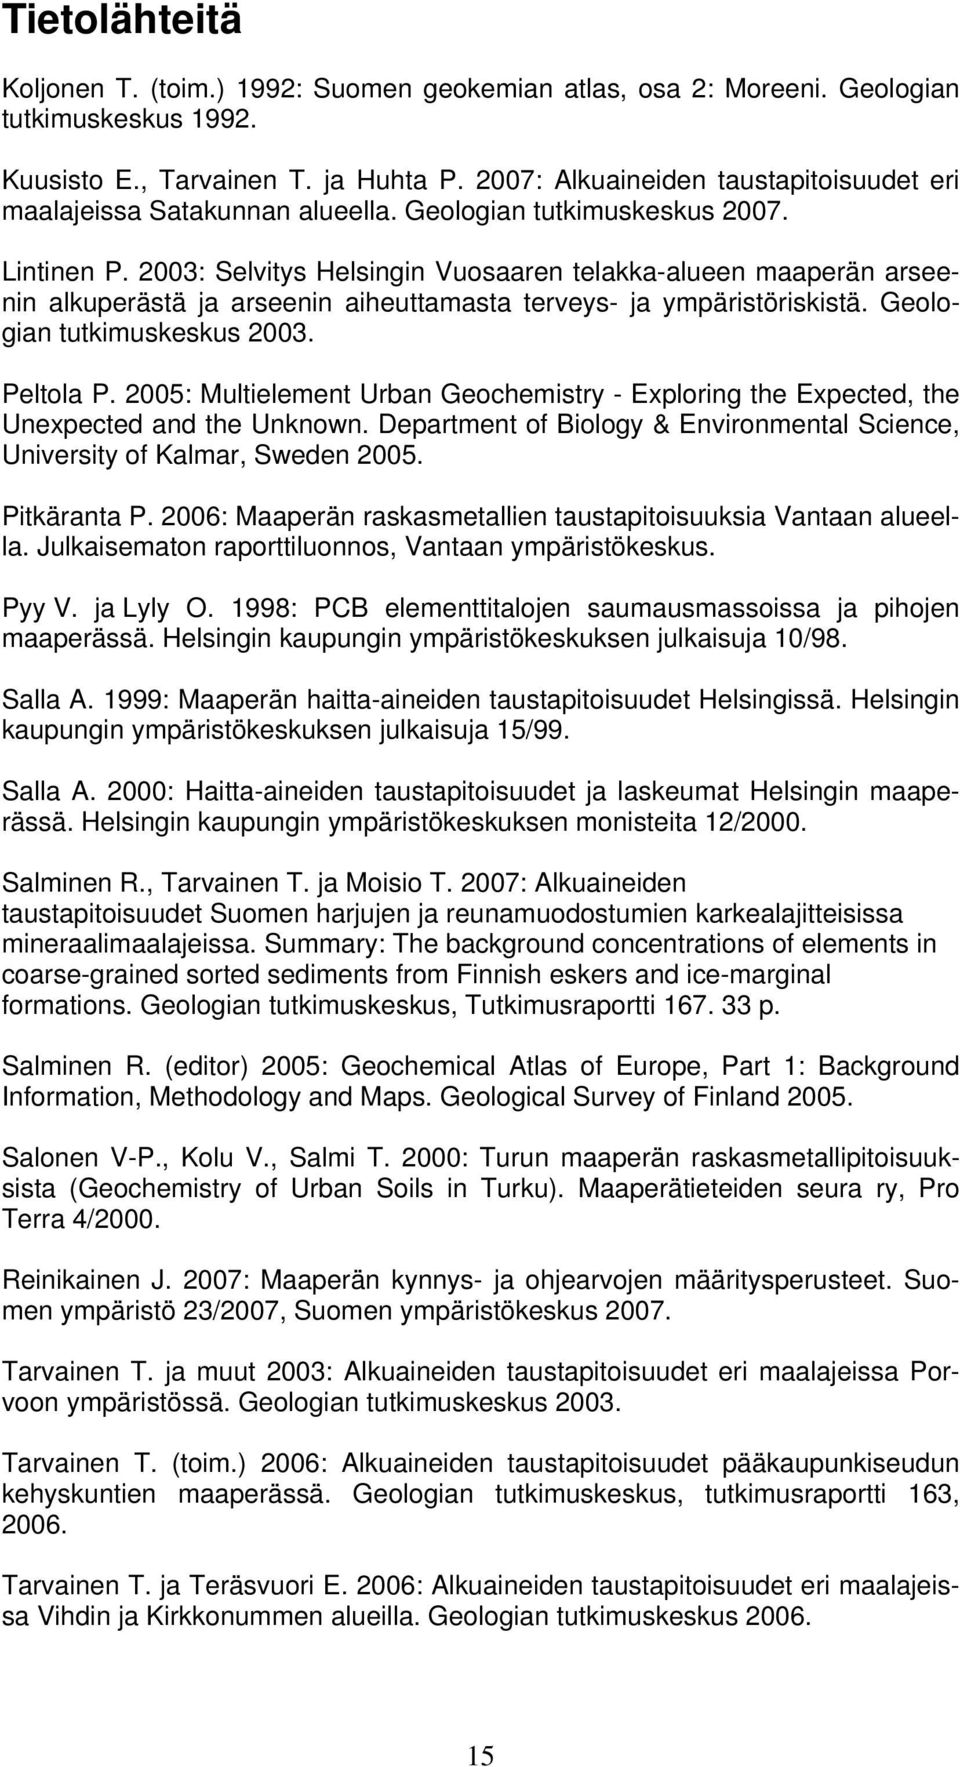 2003: Selvitys Helsingin Vuosaaren telakka-alueen maaperän arseenin alkuperästä ja arseenin aiheuttamasta terveys- ja ympäristöriskistä. Geologian tutkimuskeskus 2003. Peltola P.